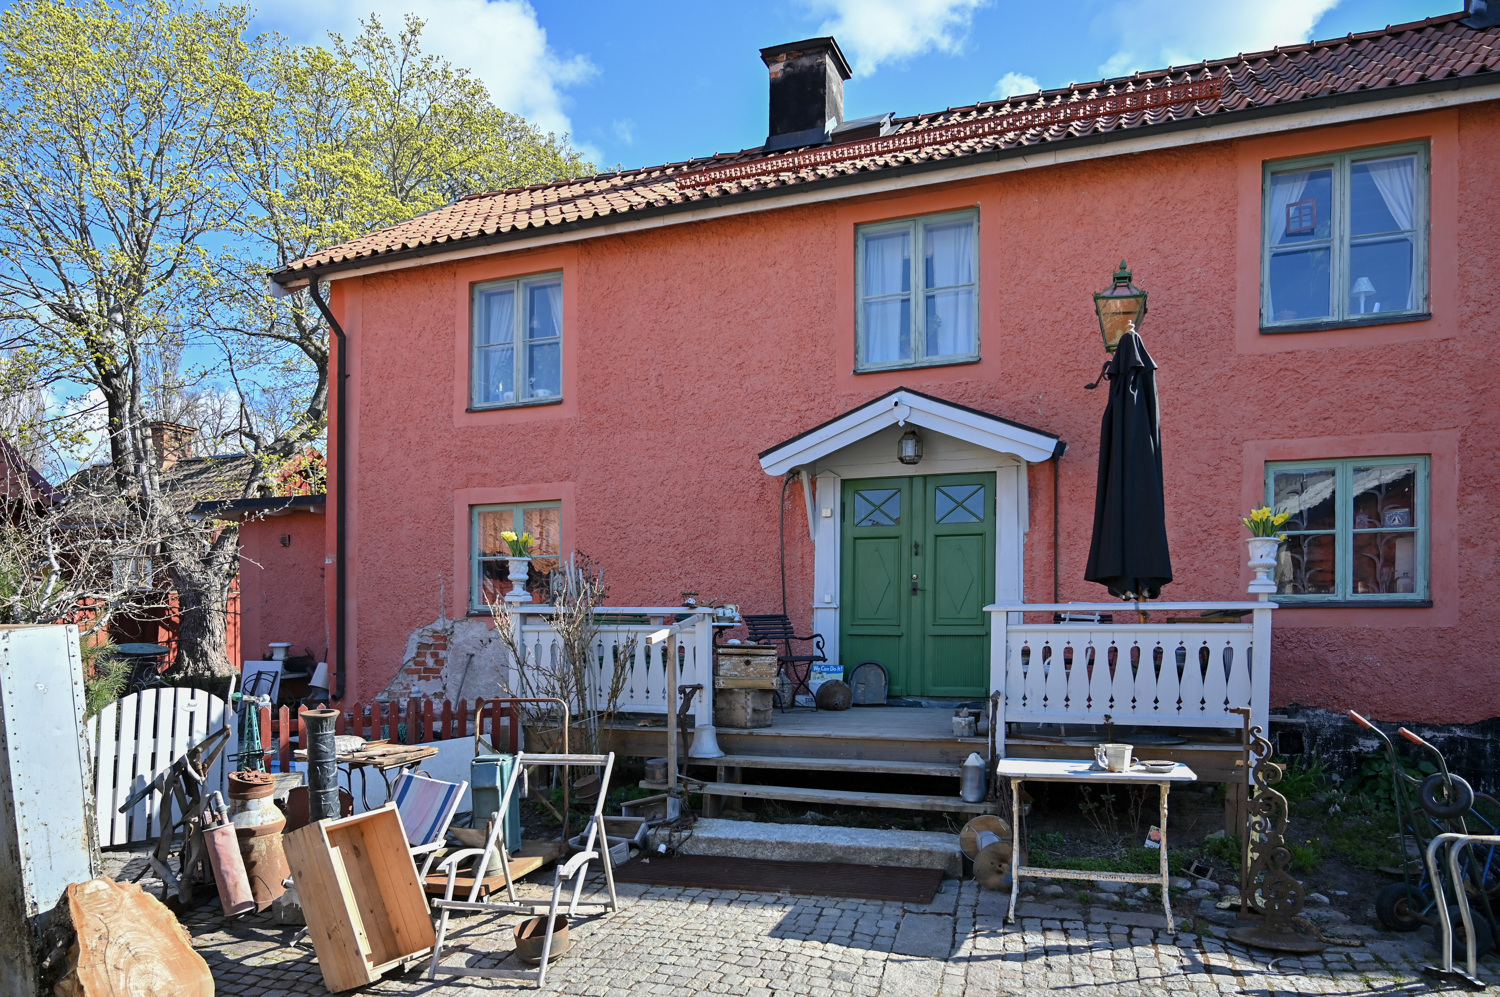 Pagelska gården i Malmköping sett från väster.